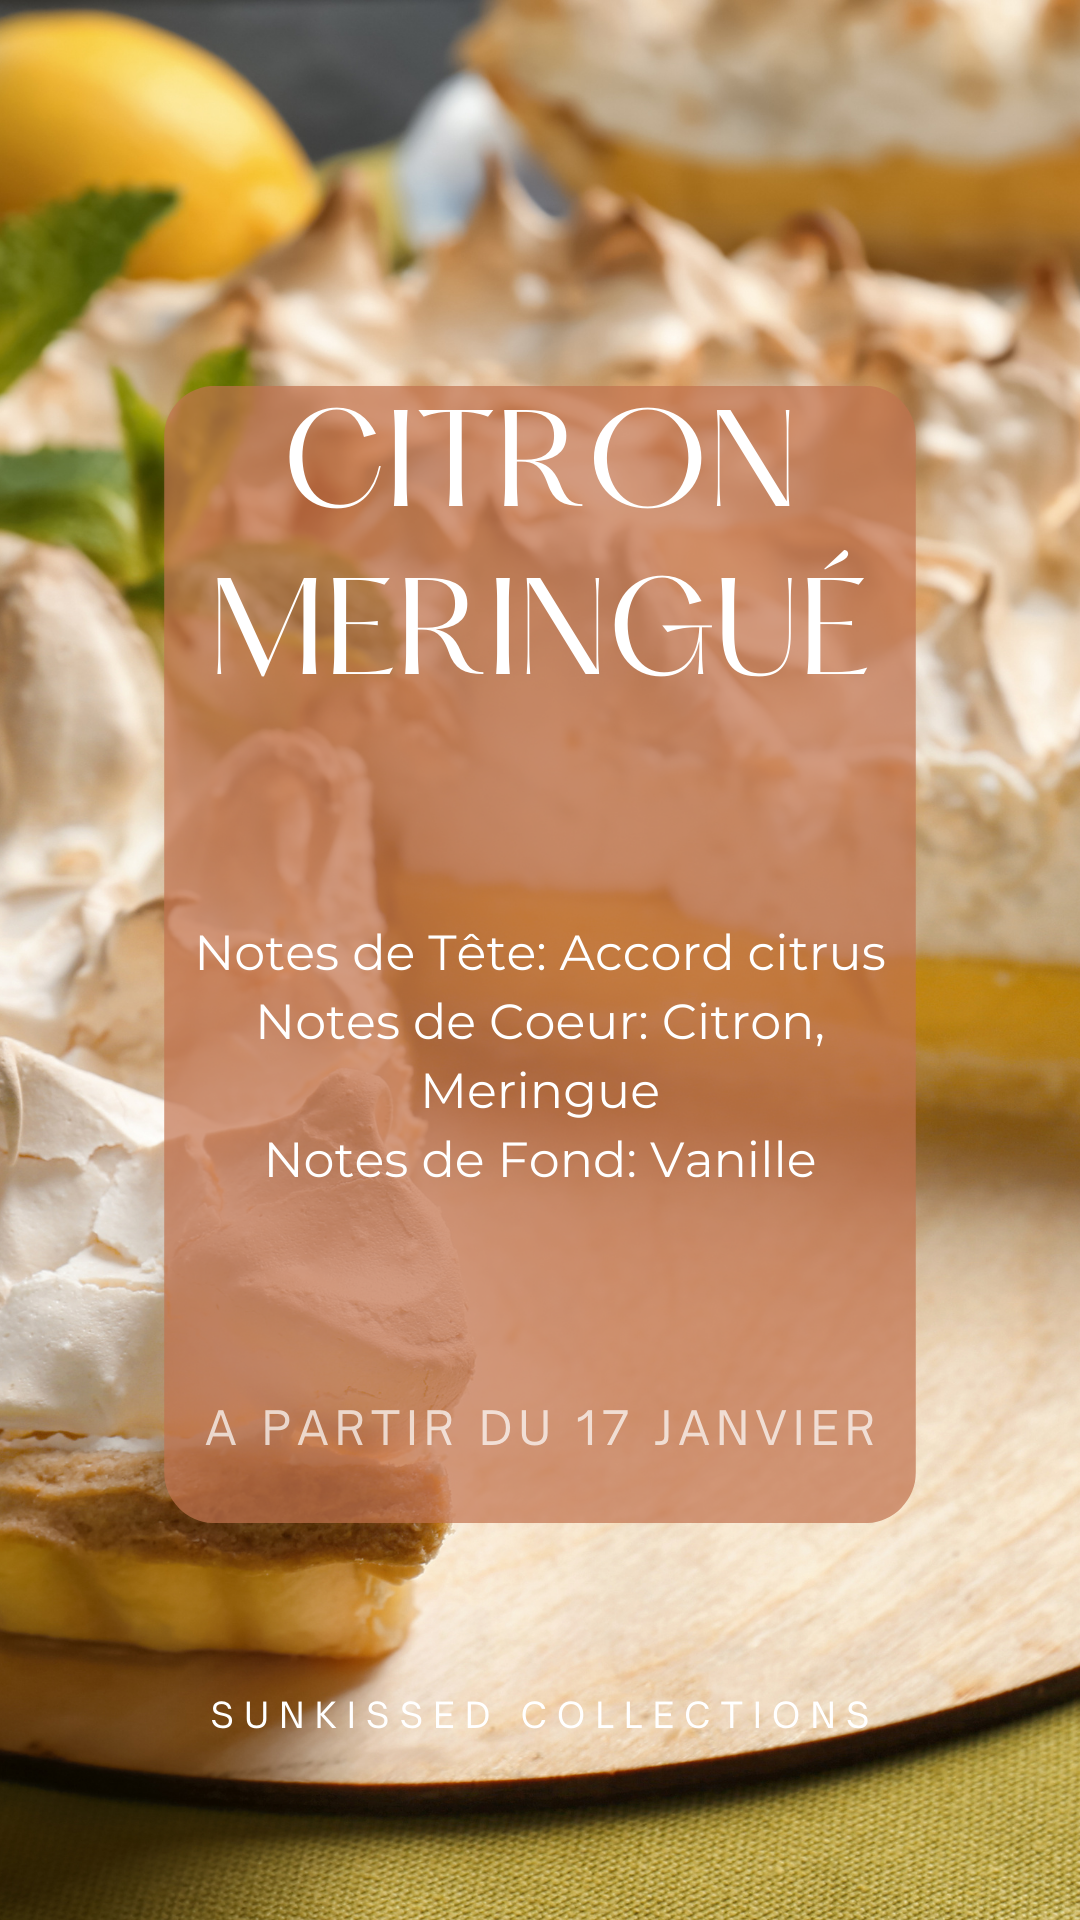 Fondant Parfumé - Citron Meringué